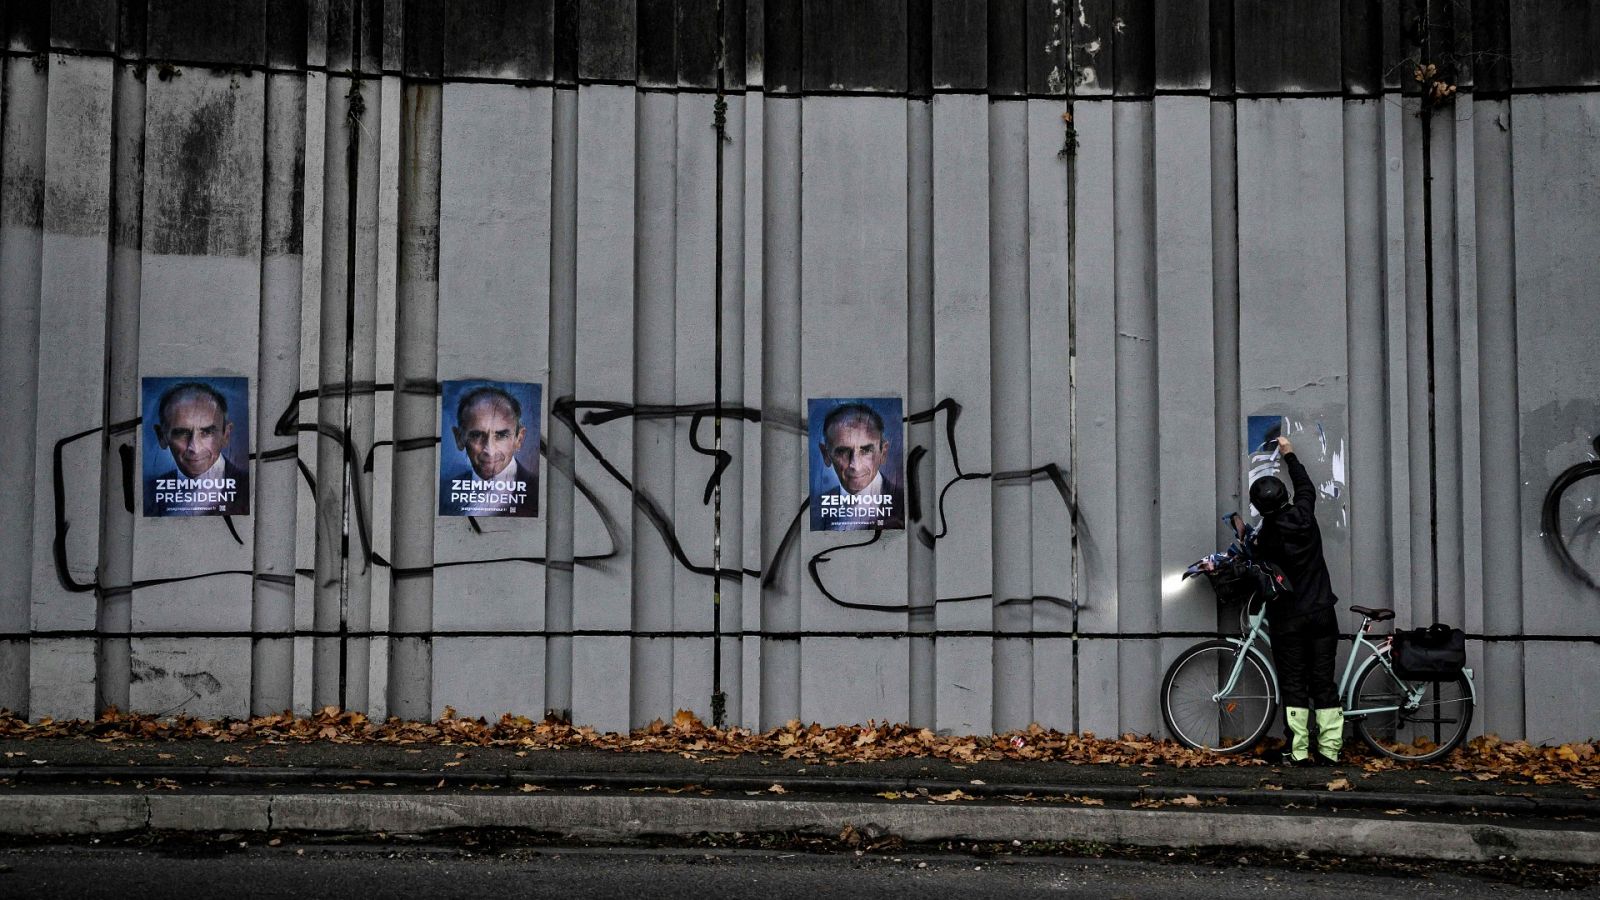 Un ciclista retira los carteles de campaña del utraderechista Zemmour